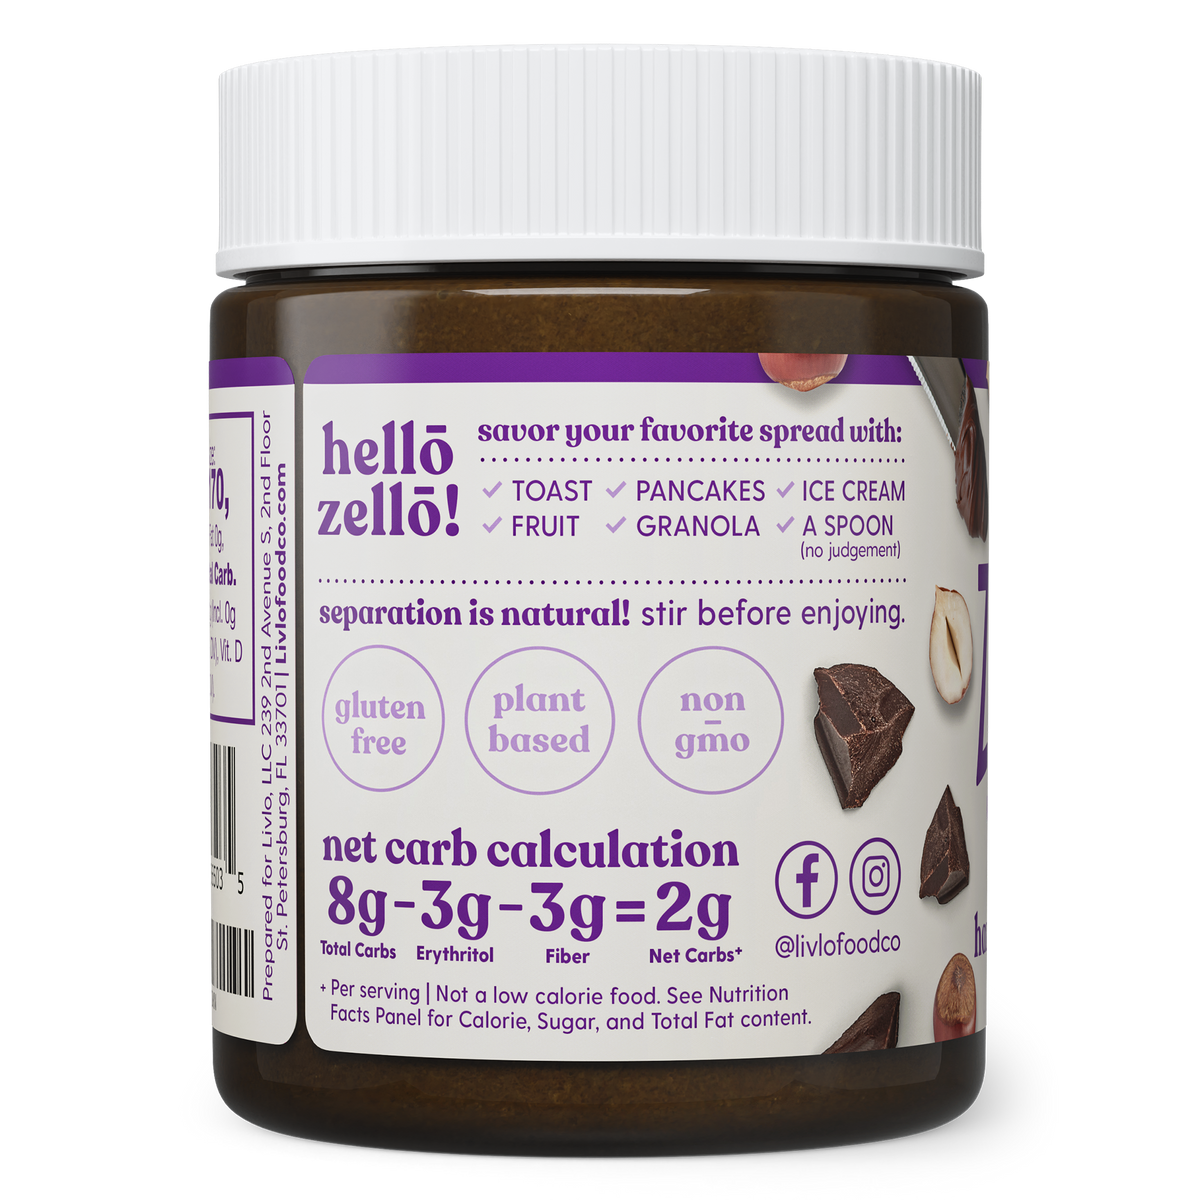 Zellō - Chocolate Hazelnut Spread